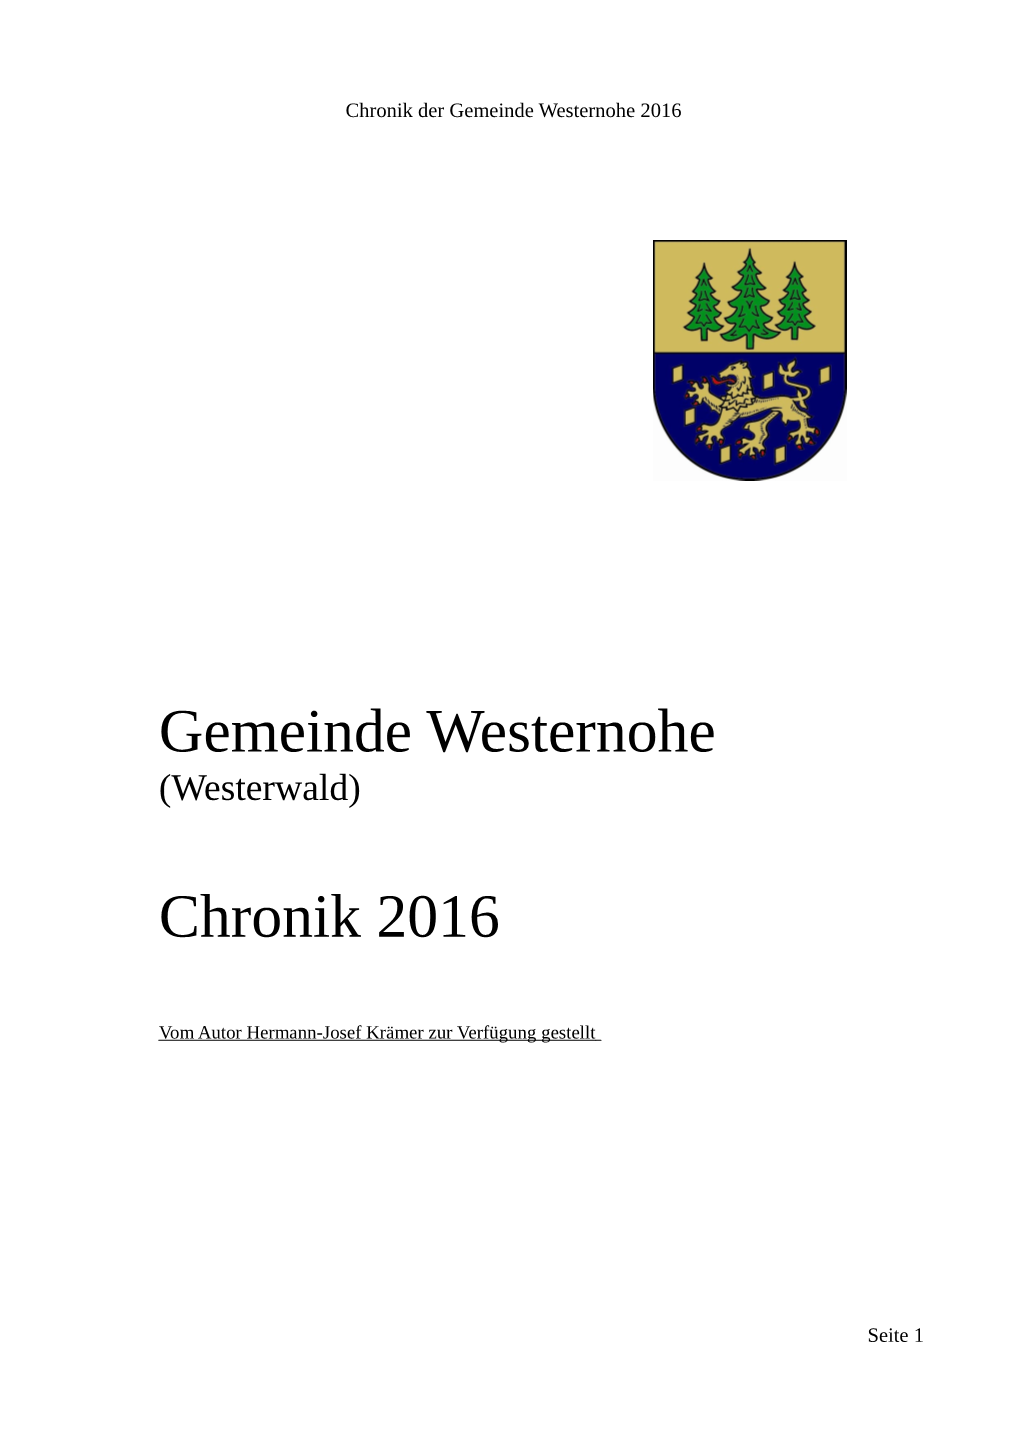 Gemeinde Westernohe Chronik 2016